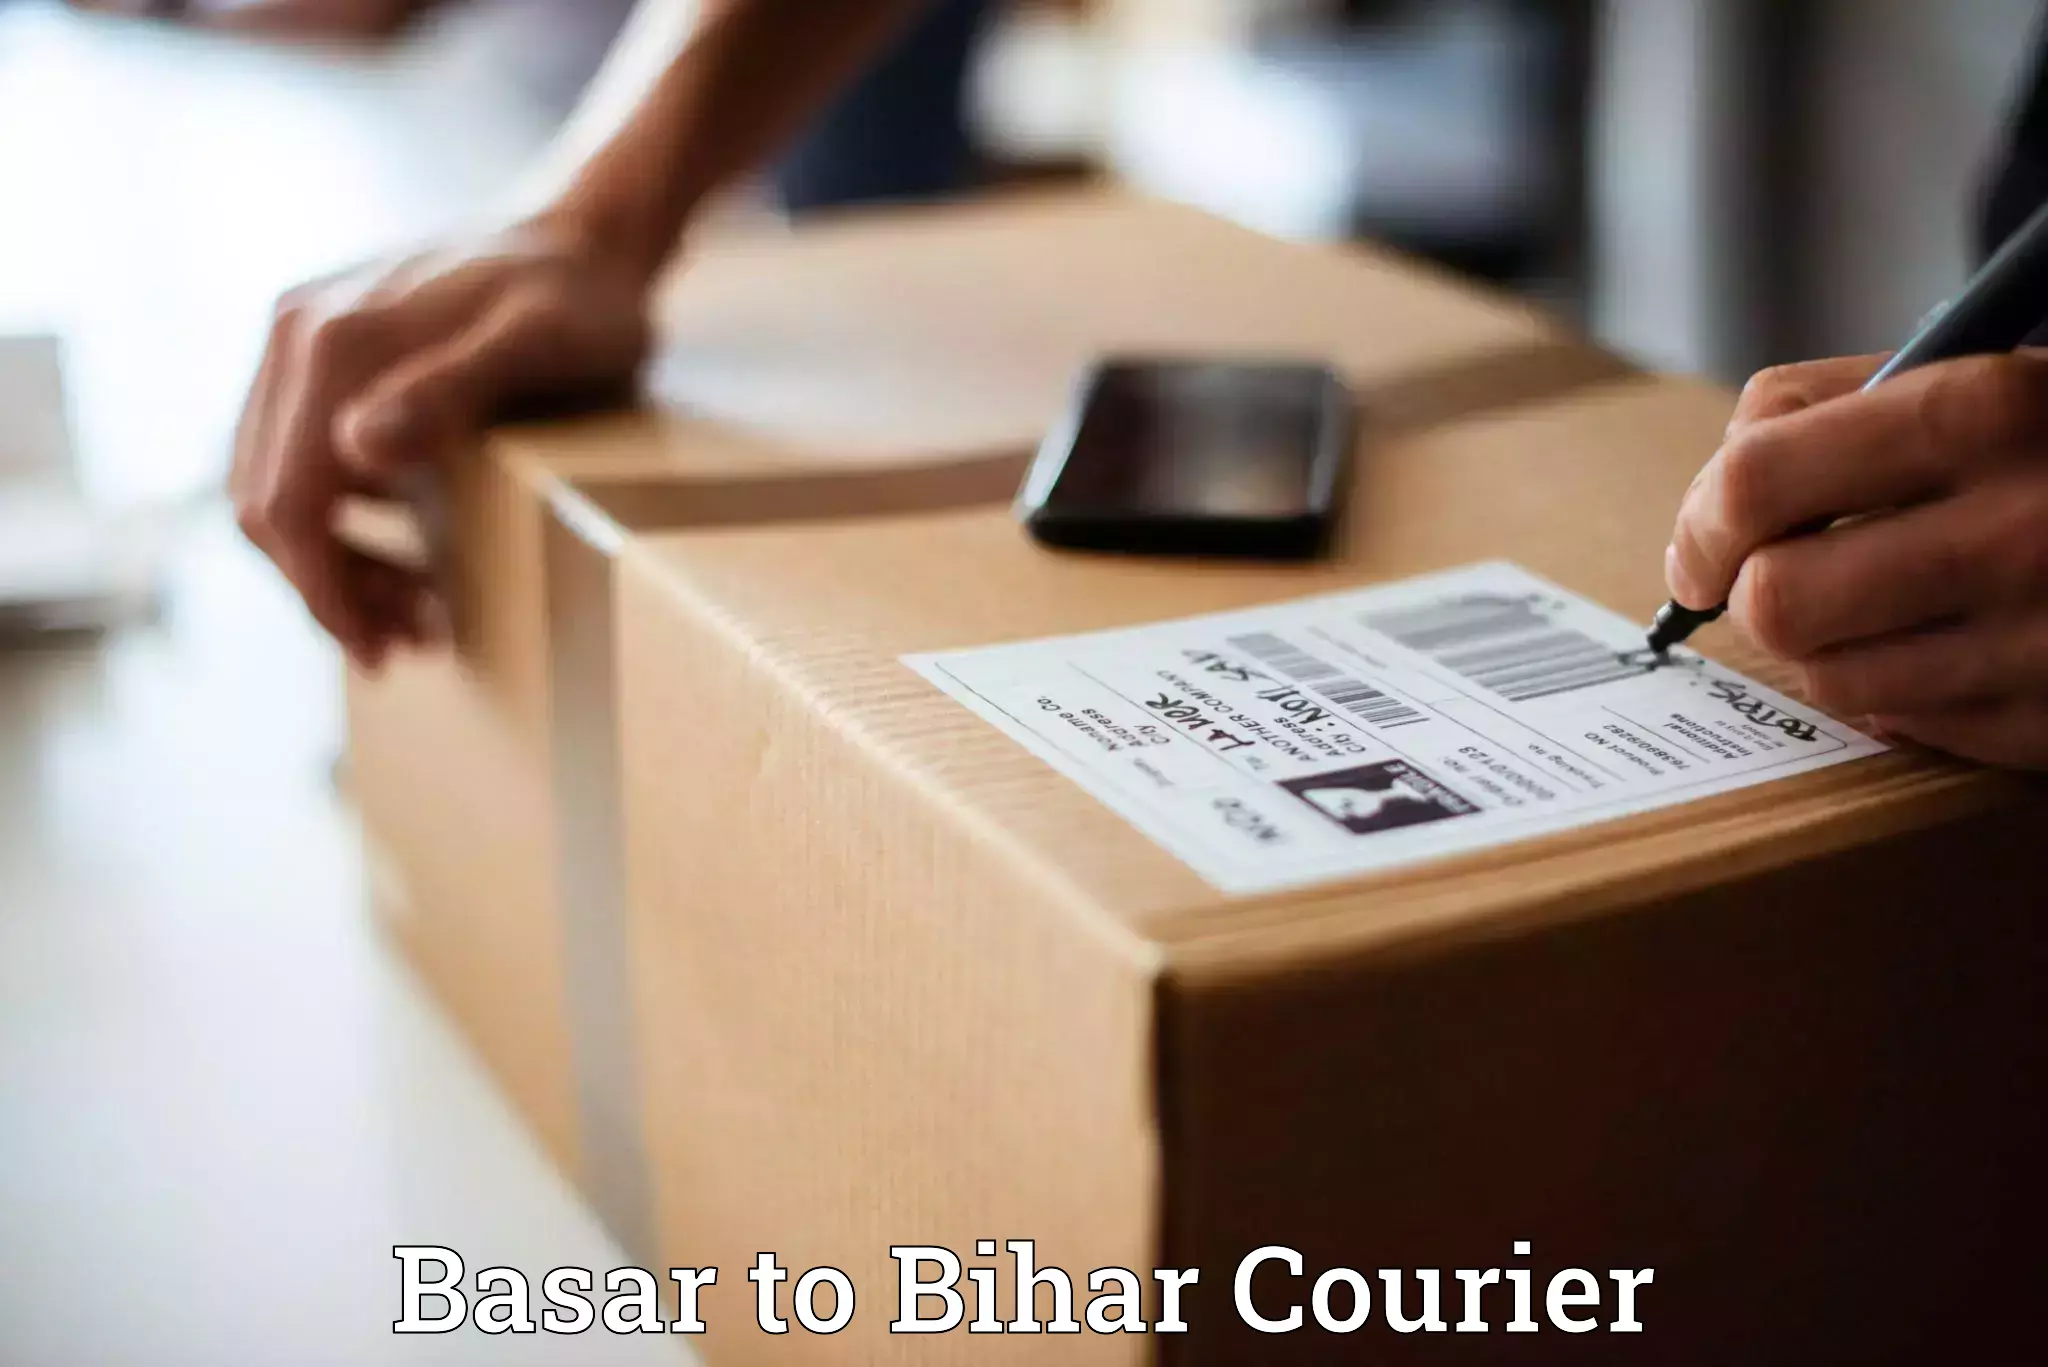 Quick dispatch service Basar to Bihar